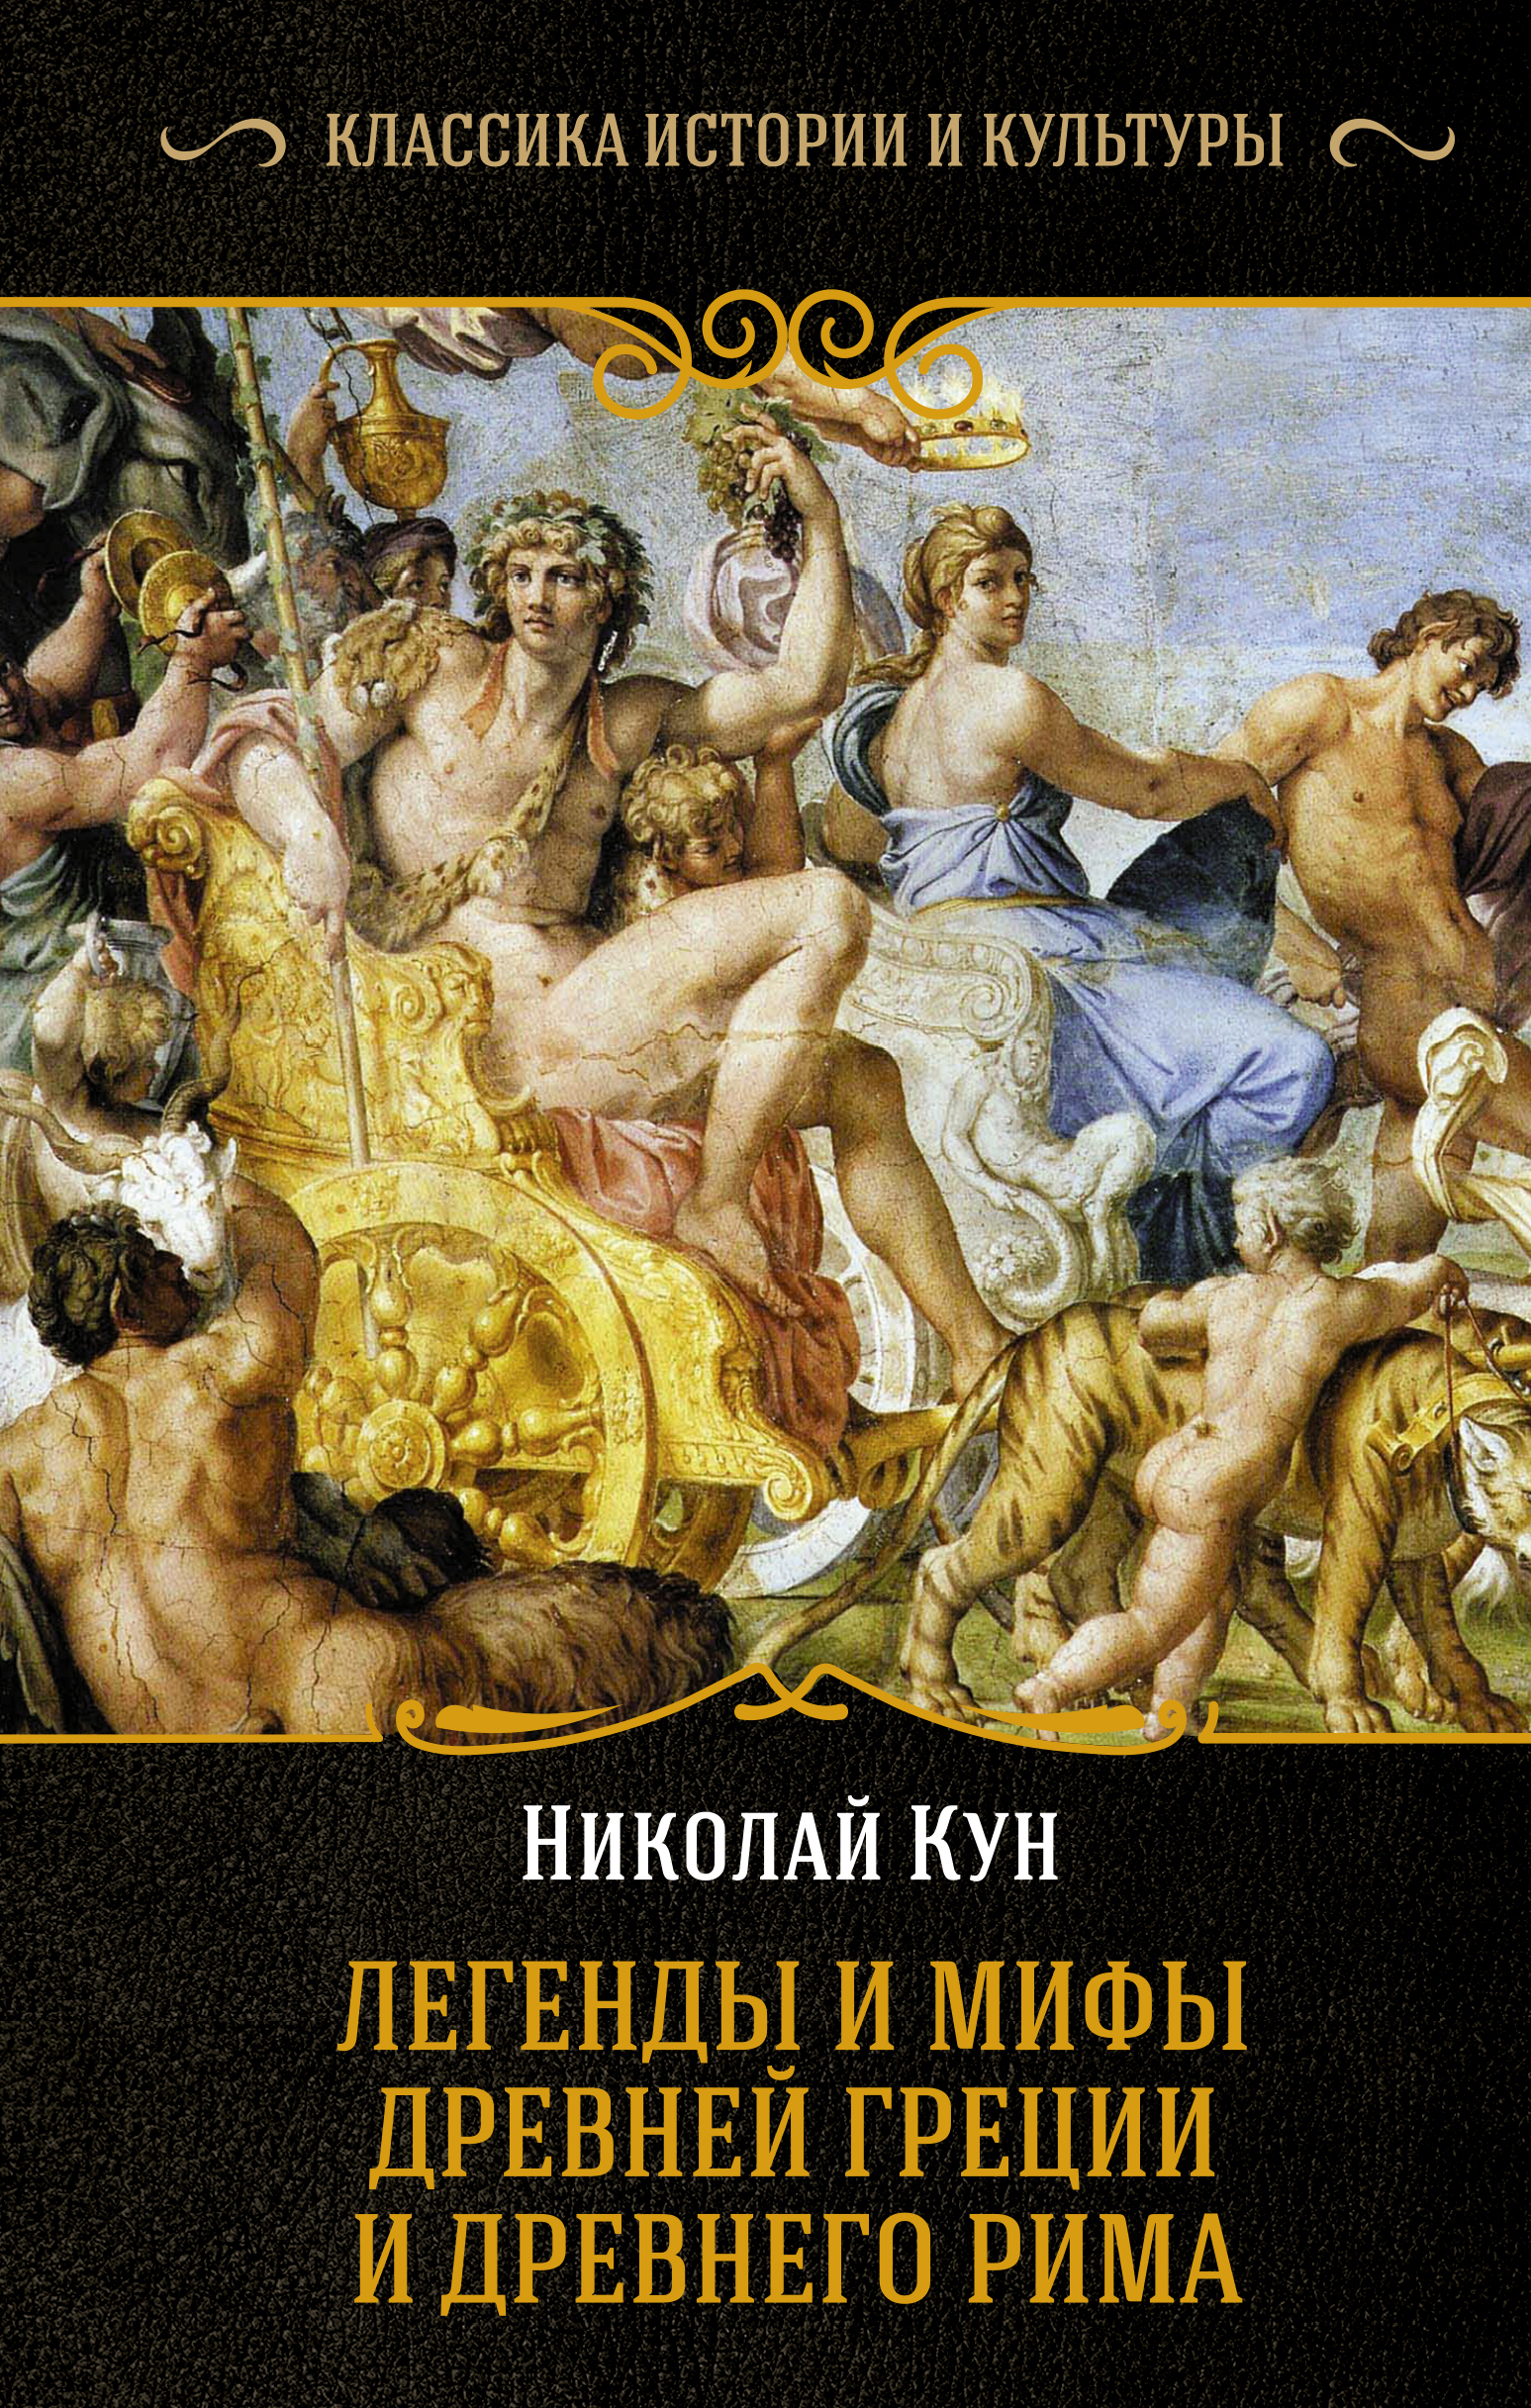 Легенды древней греции и рима. Книга легенды и мифы древней Греции н.а кун.